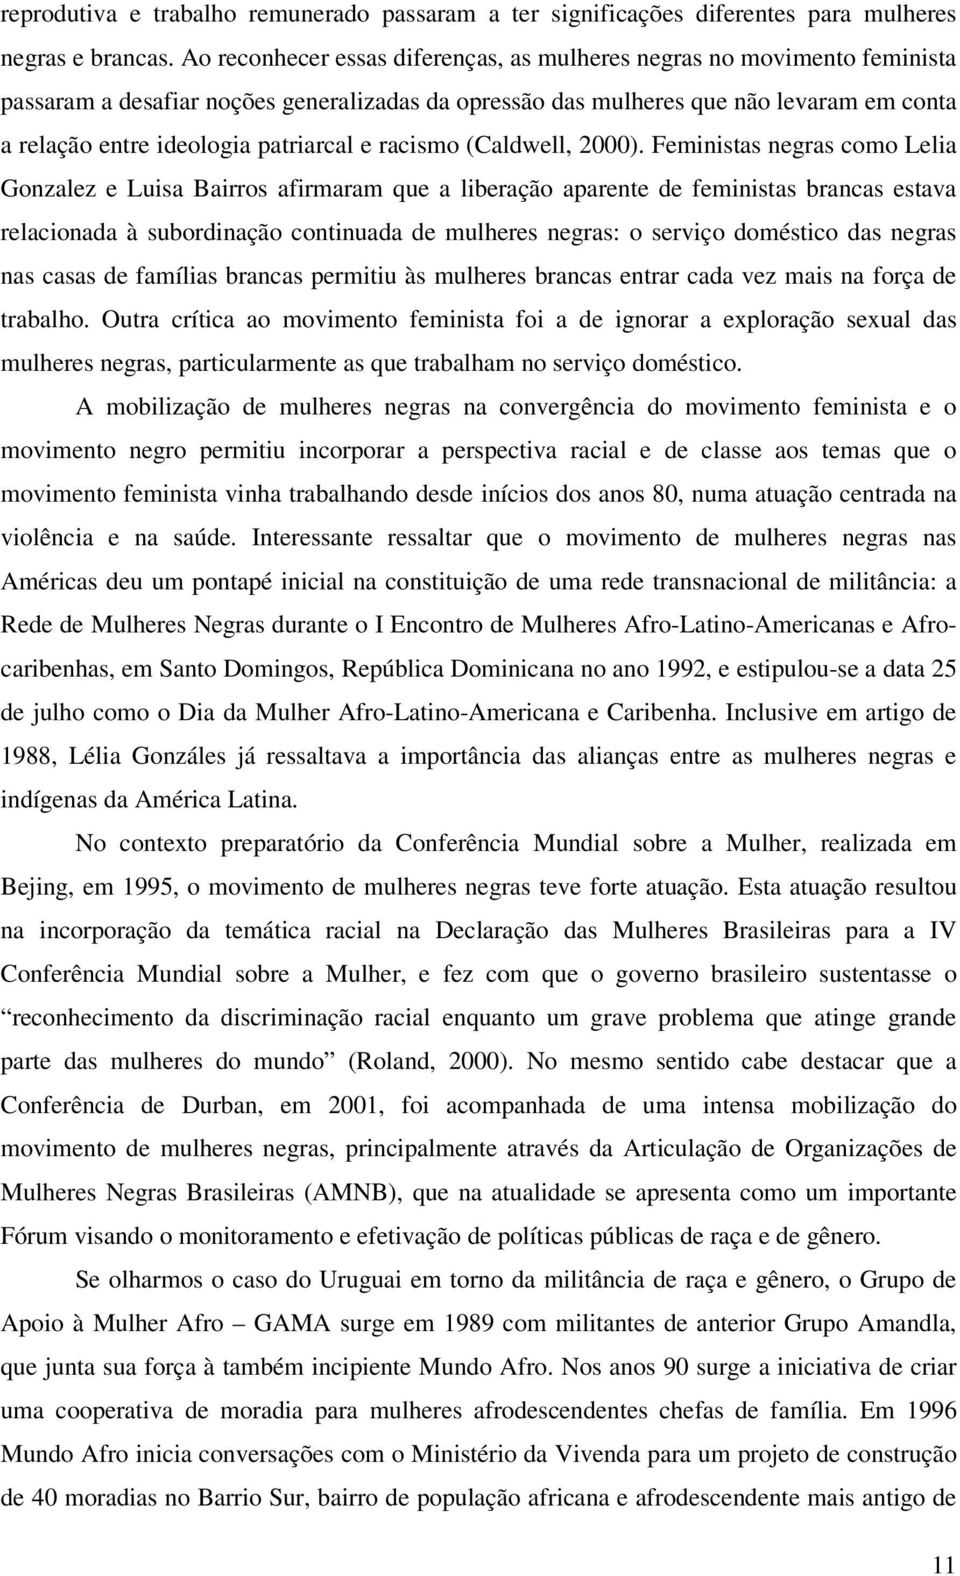 patriarcal e racismo (Caldwell, 2000).